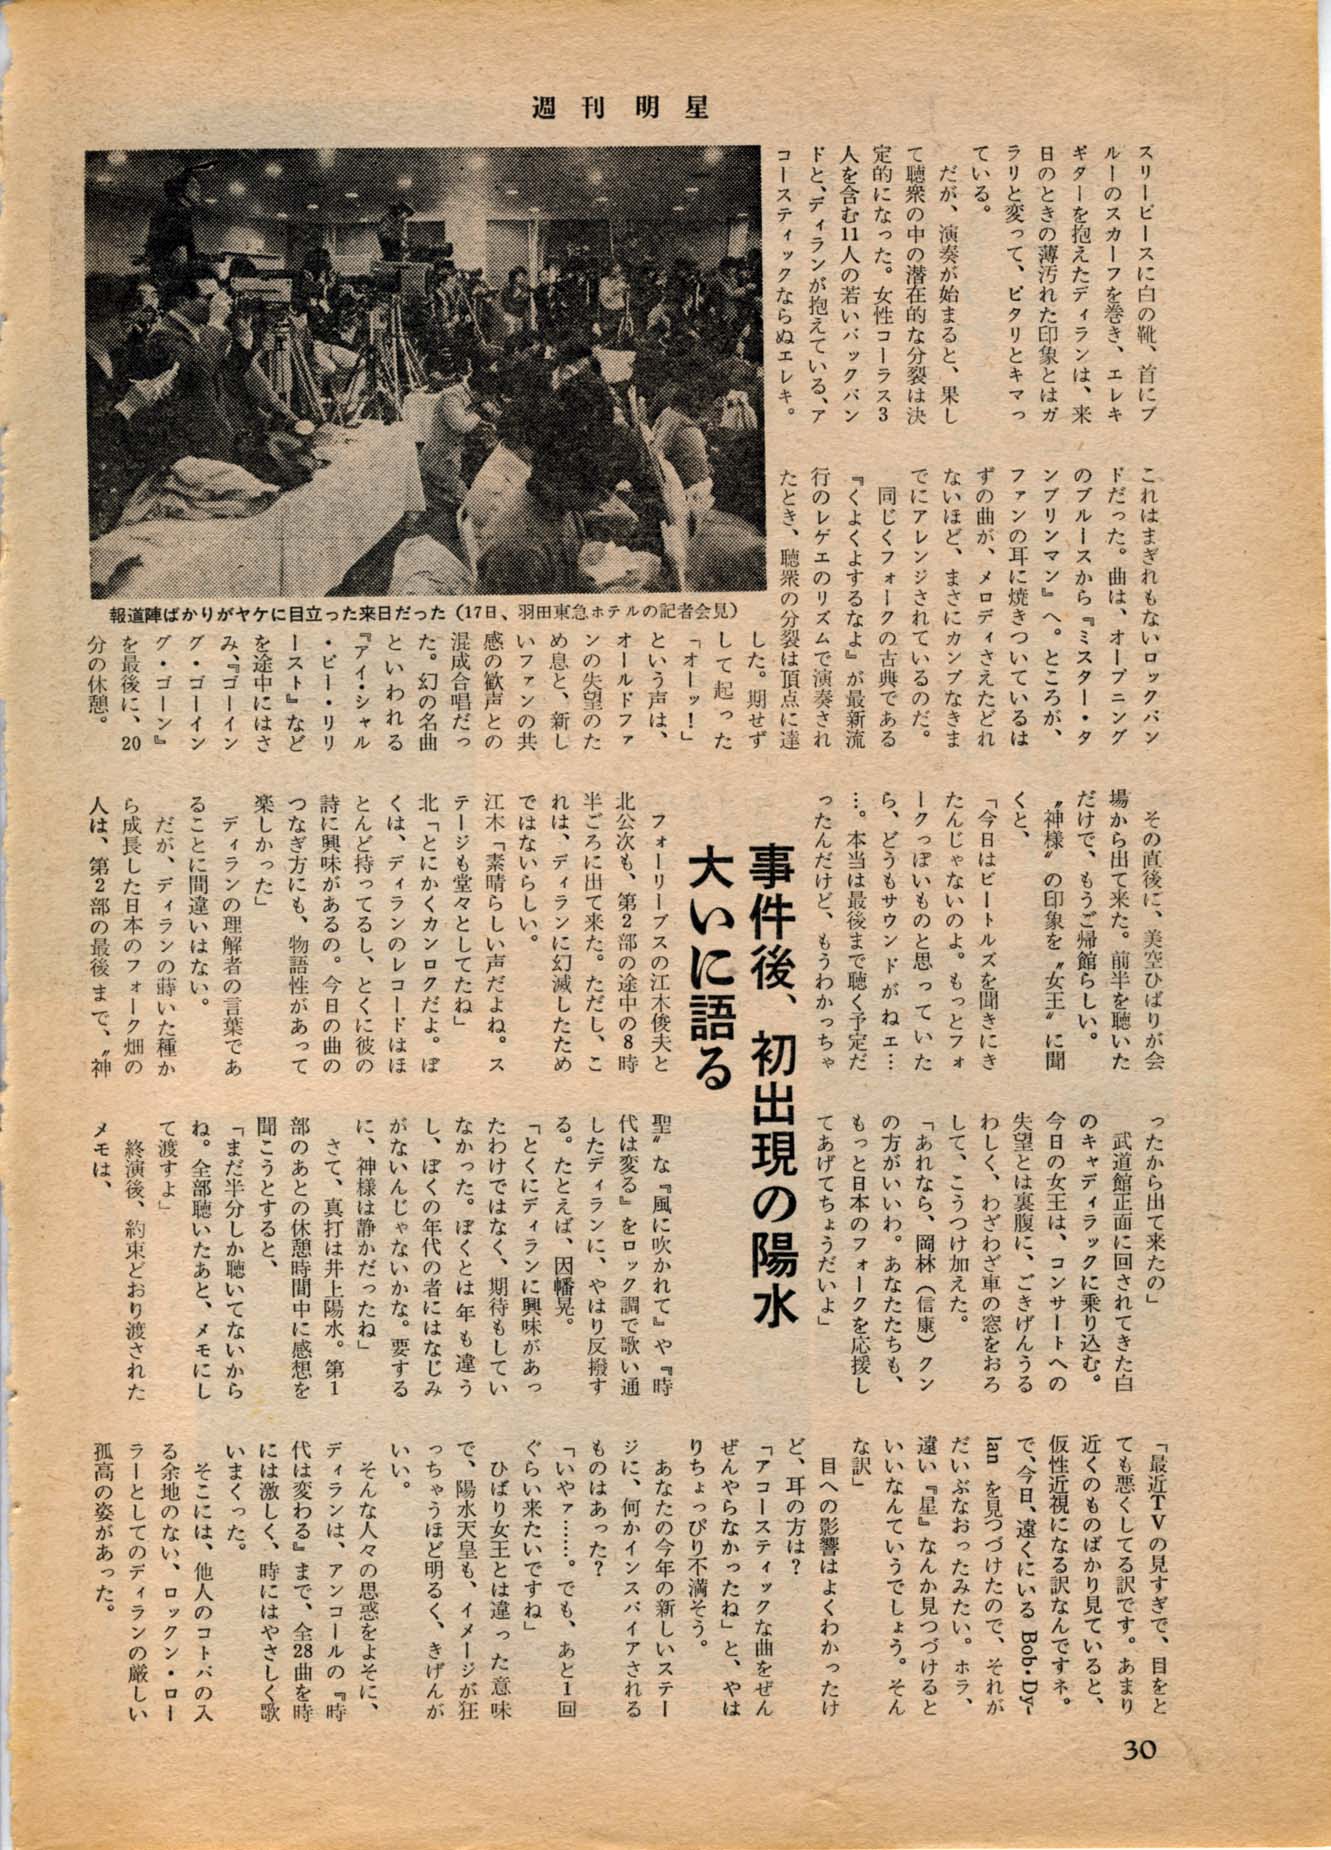 1978 MYOJO